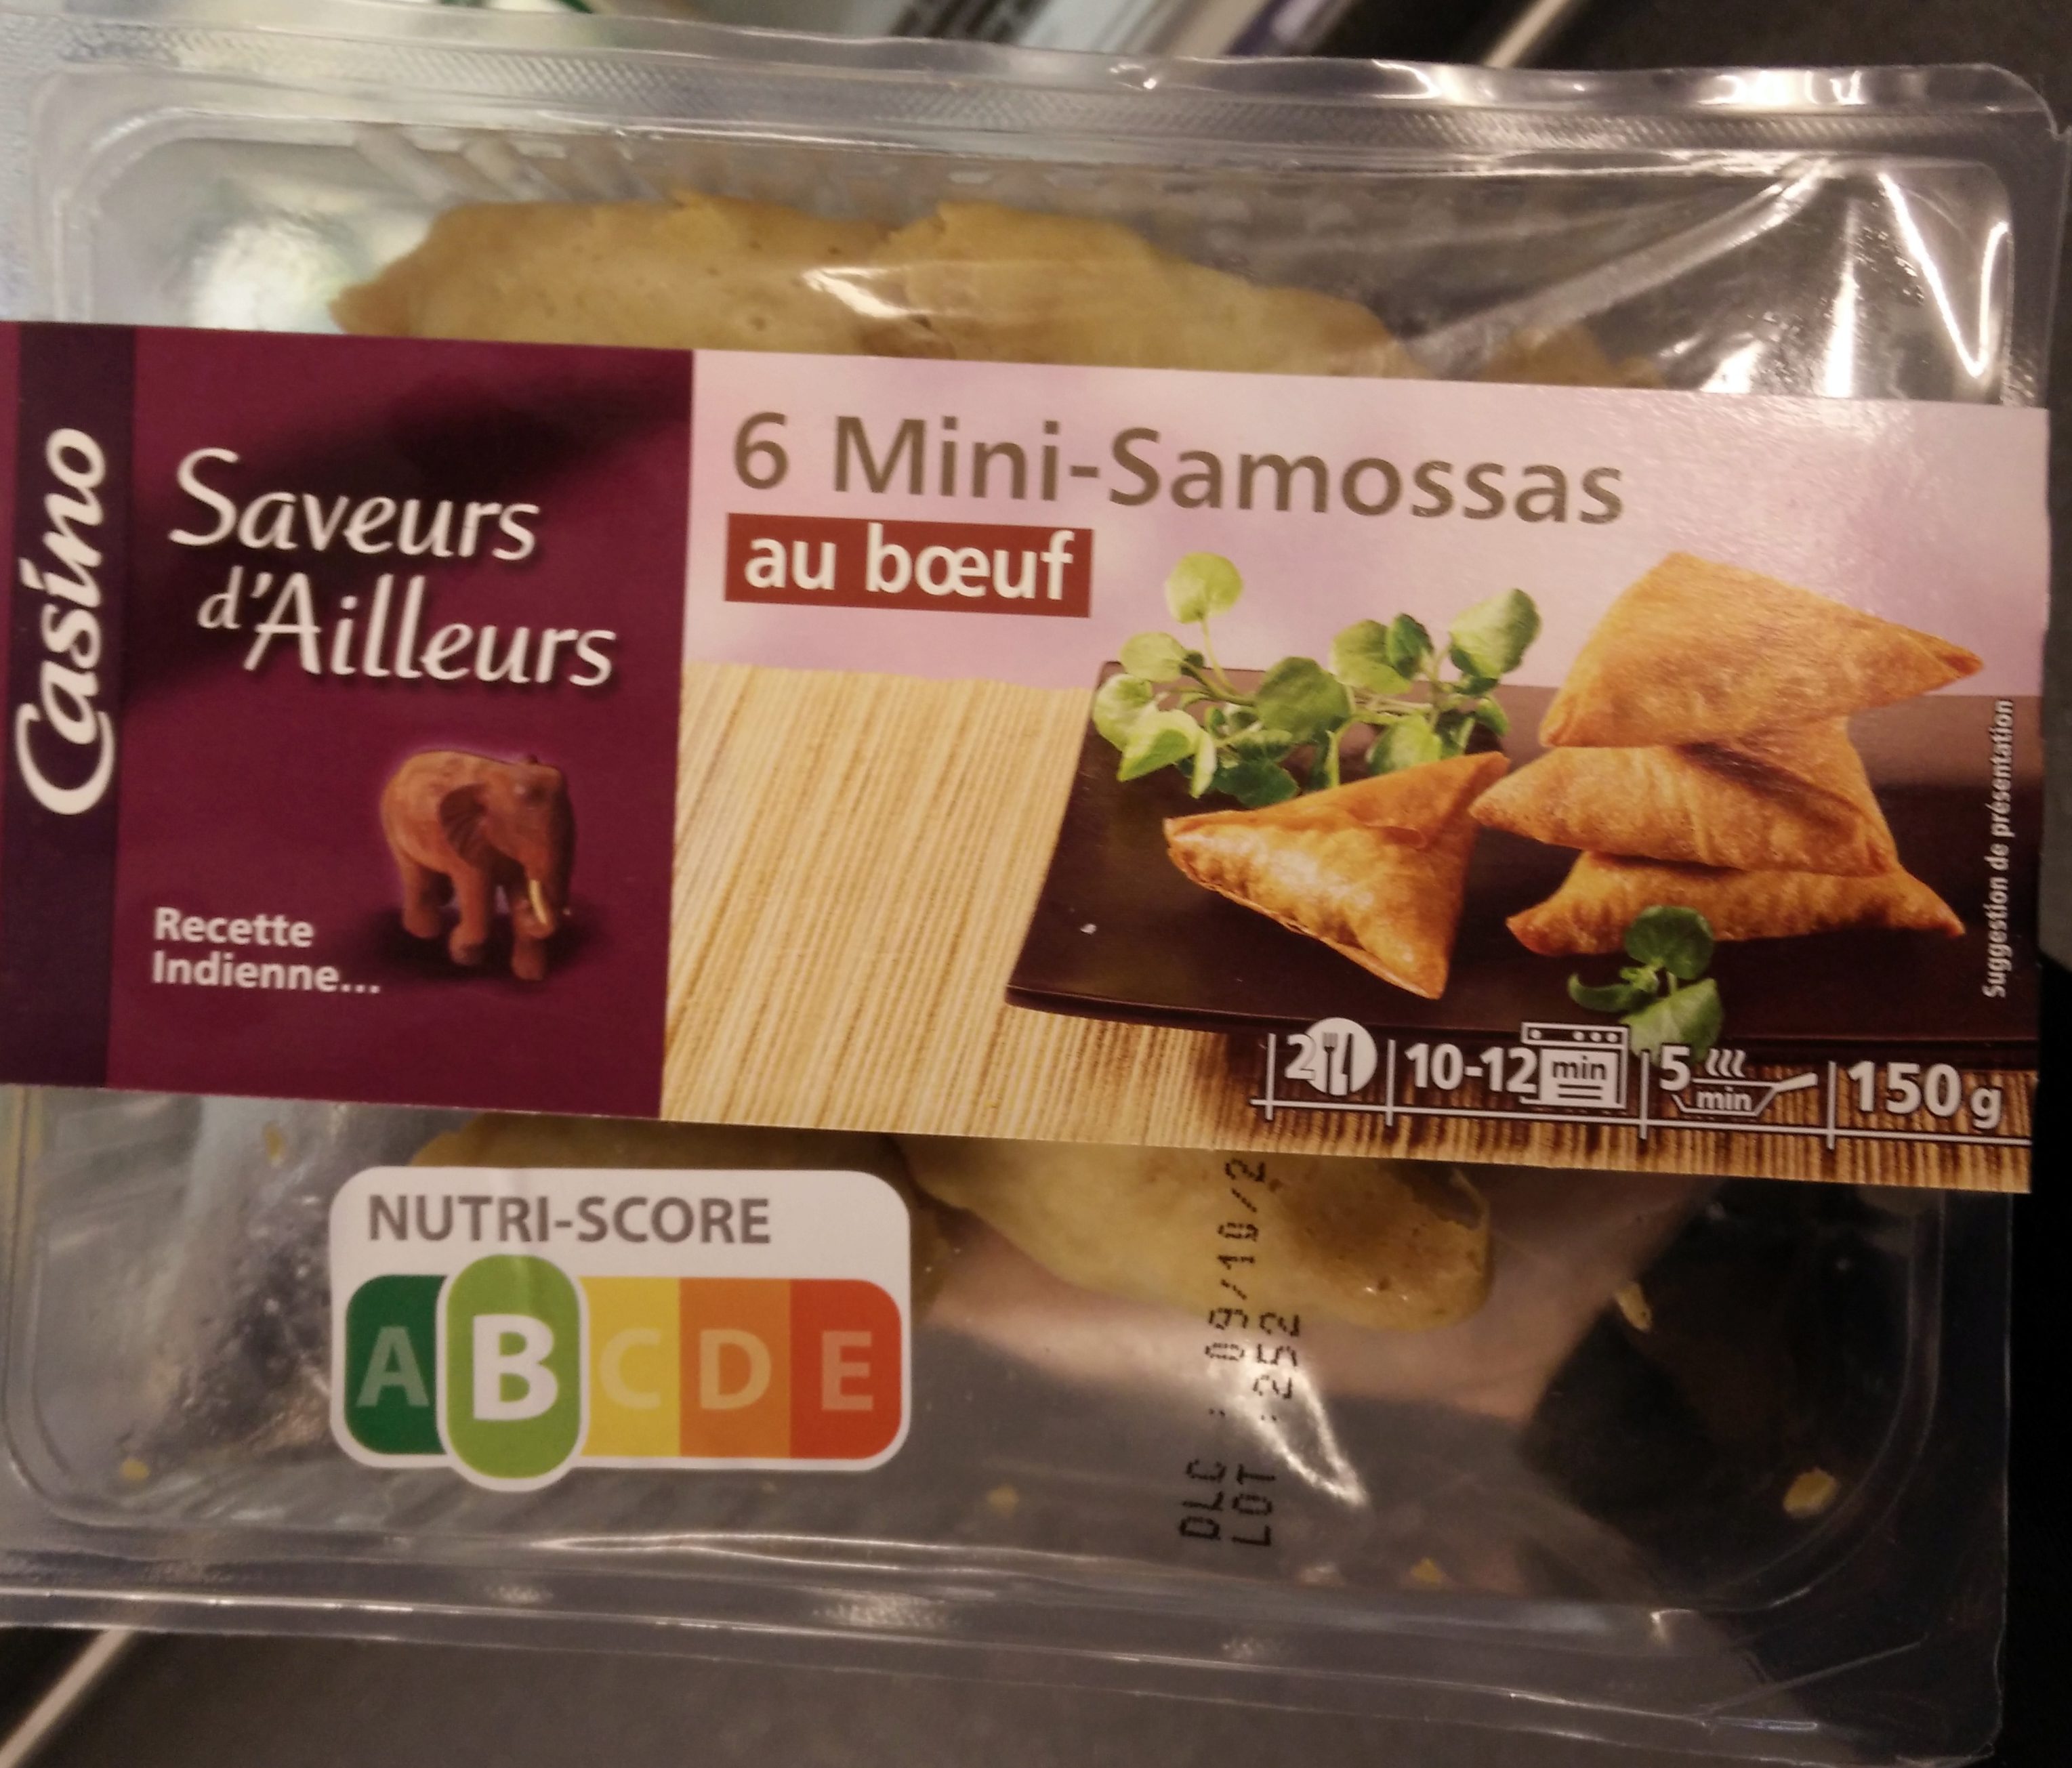 Saveurs d'Ailleurs - 6 Mini-Samossas au bœuf - Produit